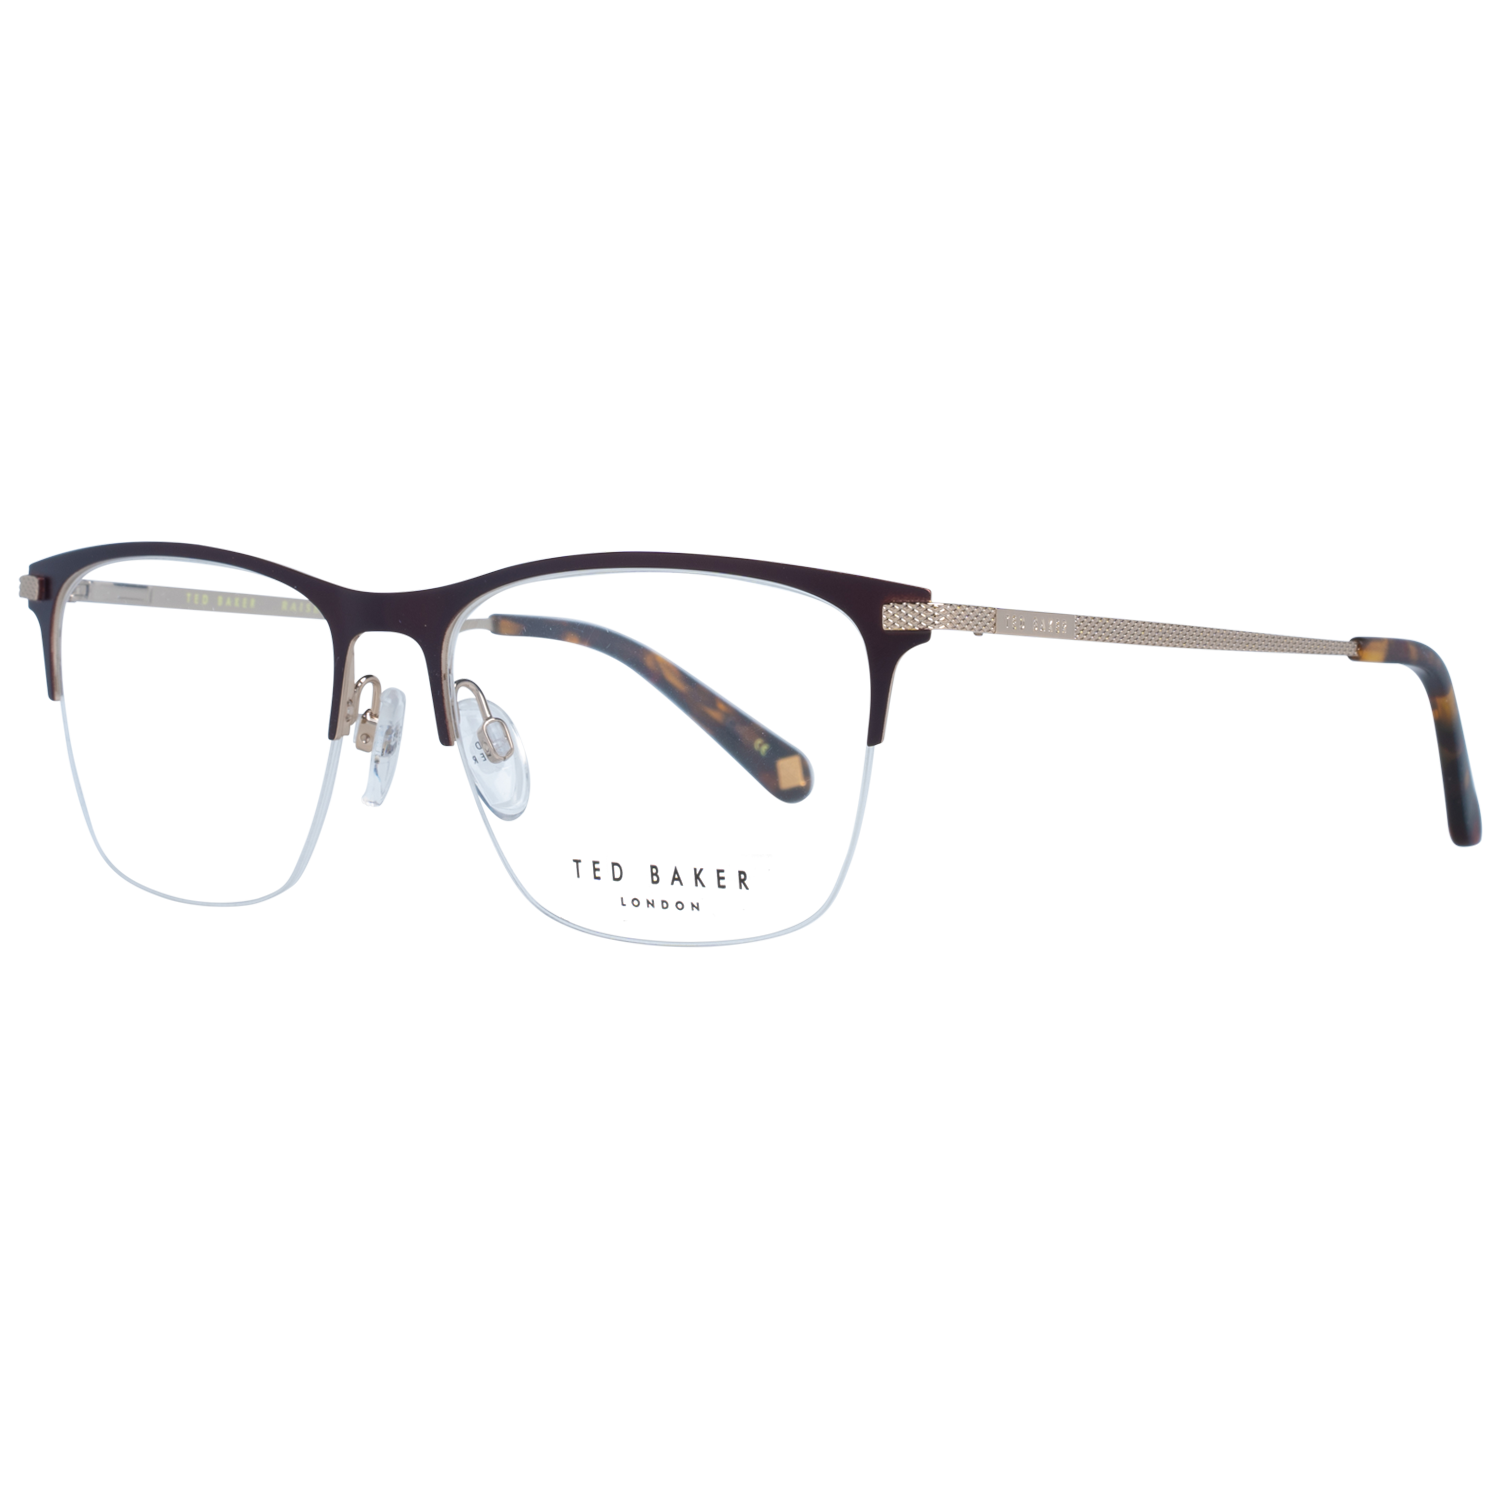 Ted Baker Frames Ted Baker Optical Frame Prescription Glasses TB4263 118 54 Eyeglasses Eyewear UK USA Australia 